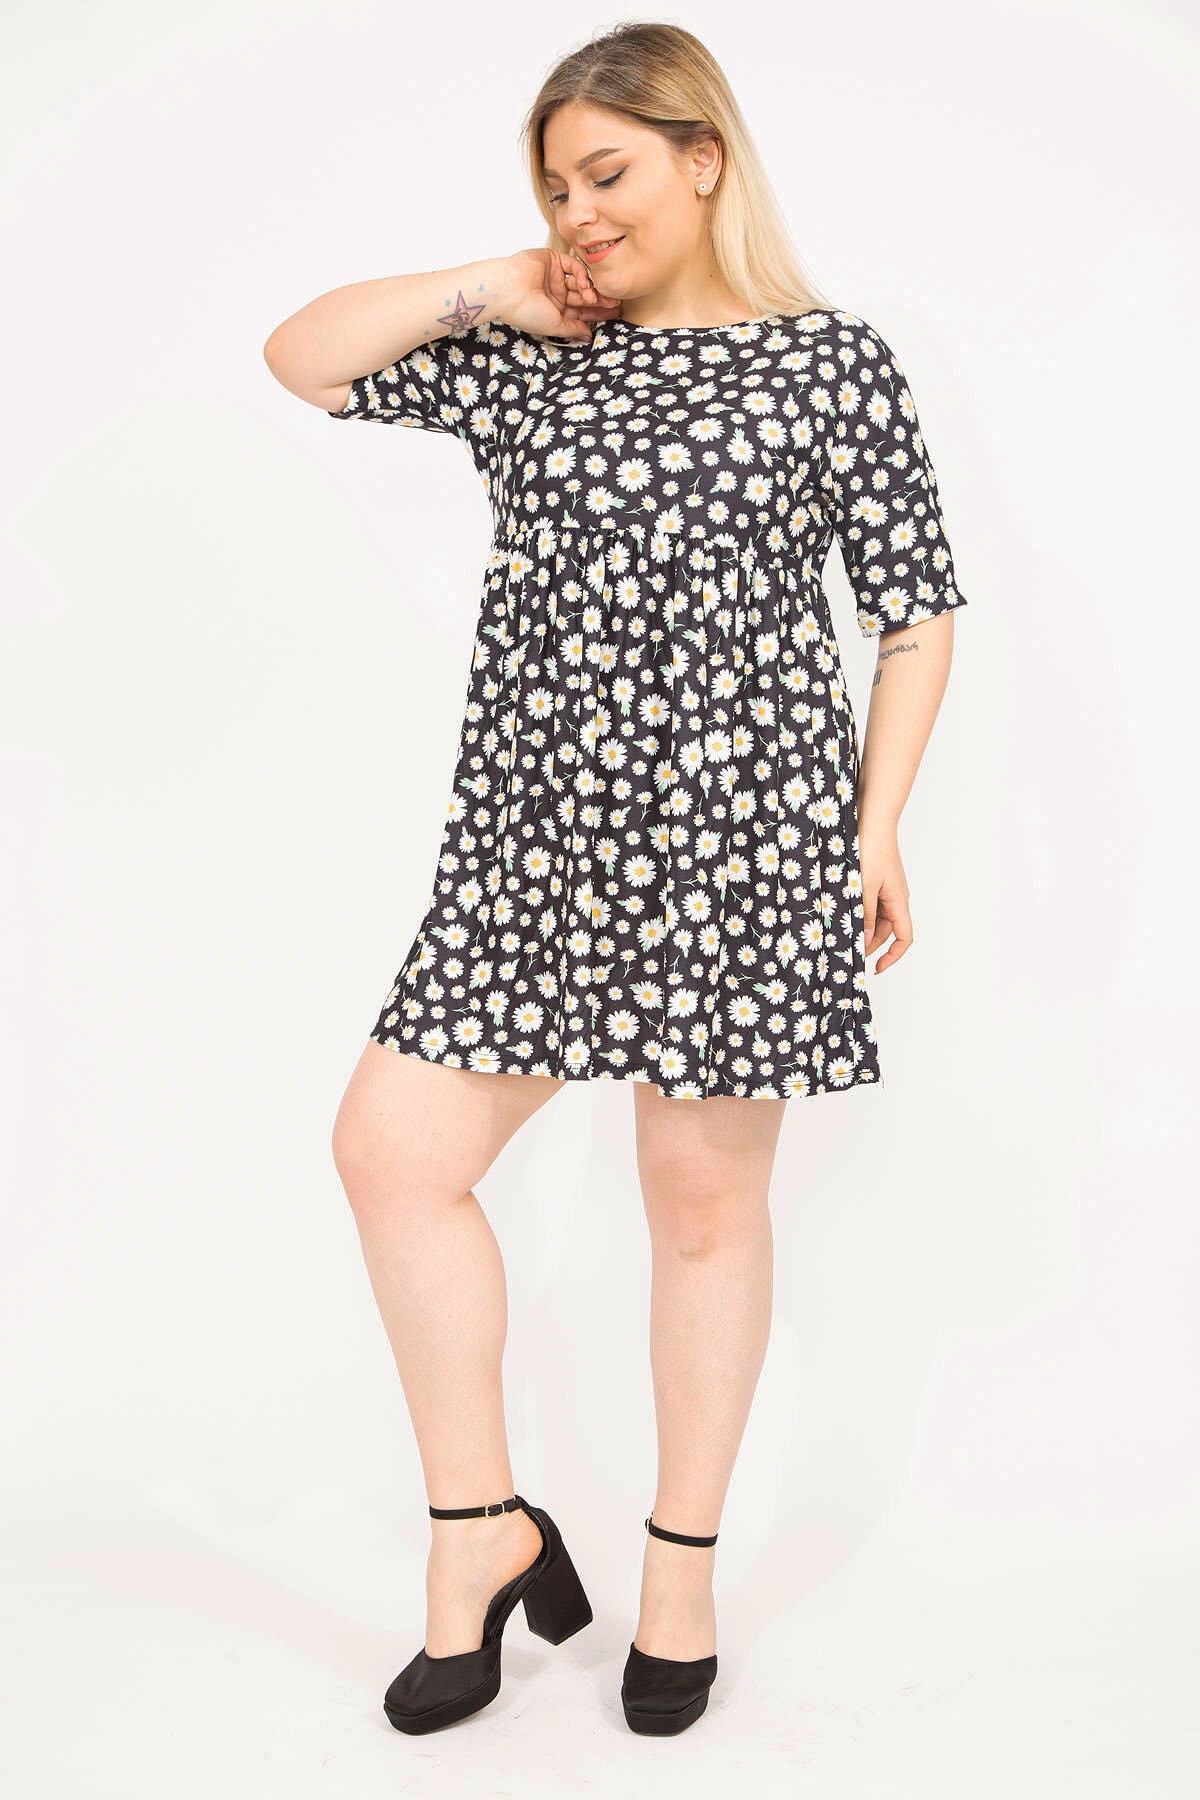 Levně Şans Women's Colorful Plus Size Elastic Waist Patterned Patterned Tunic Dress